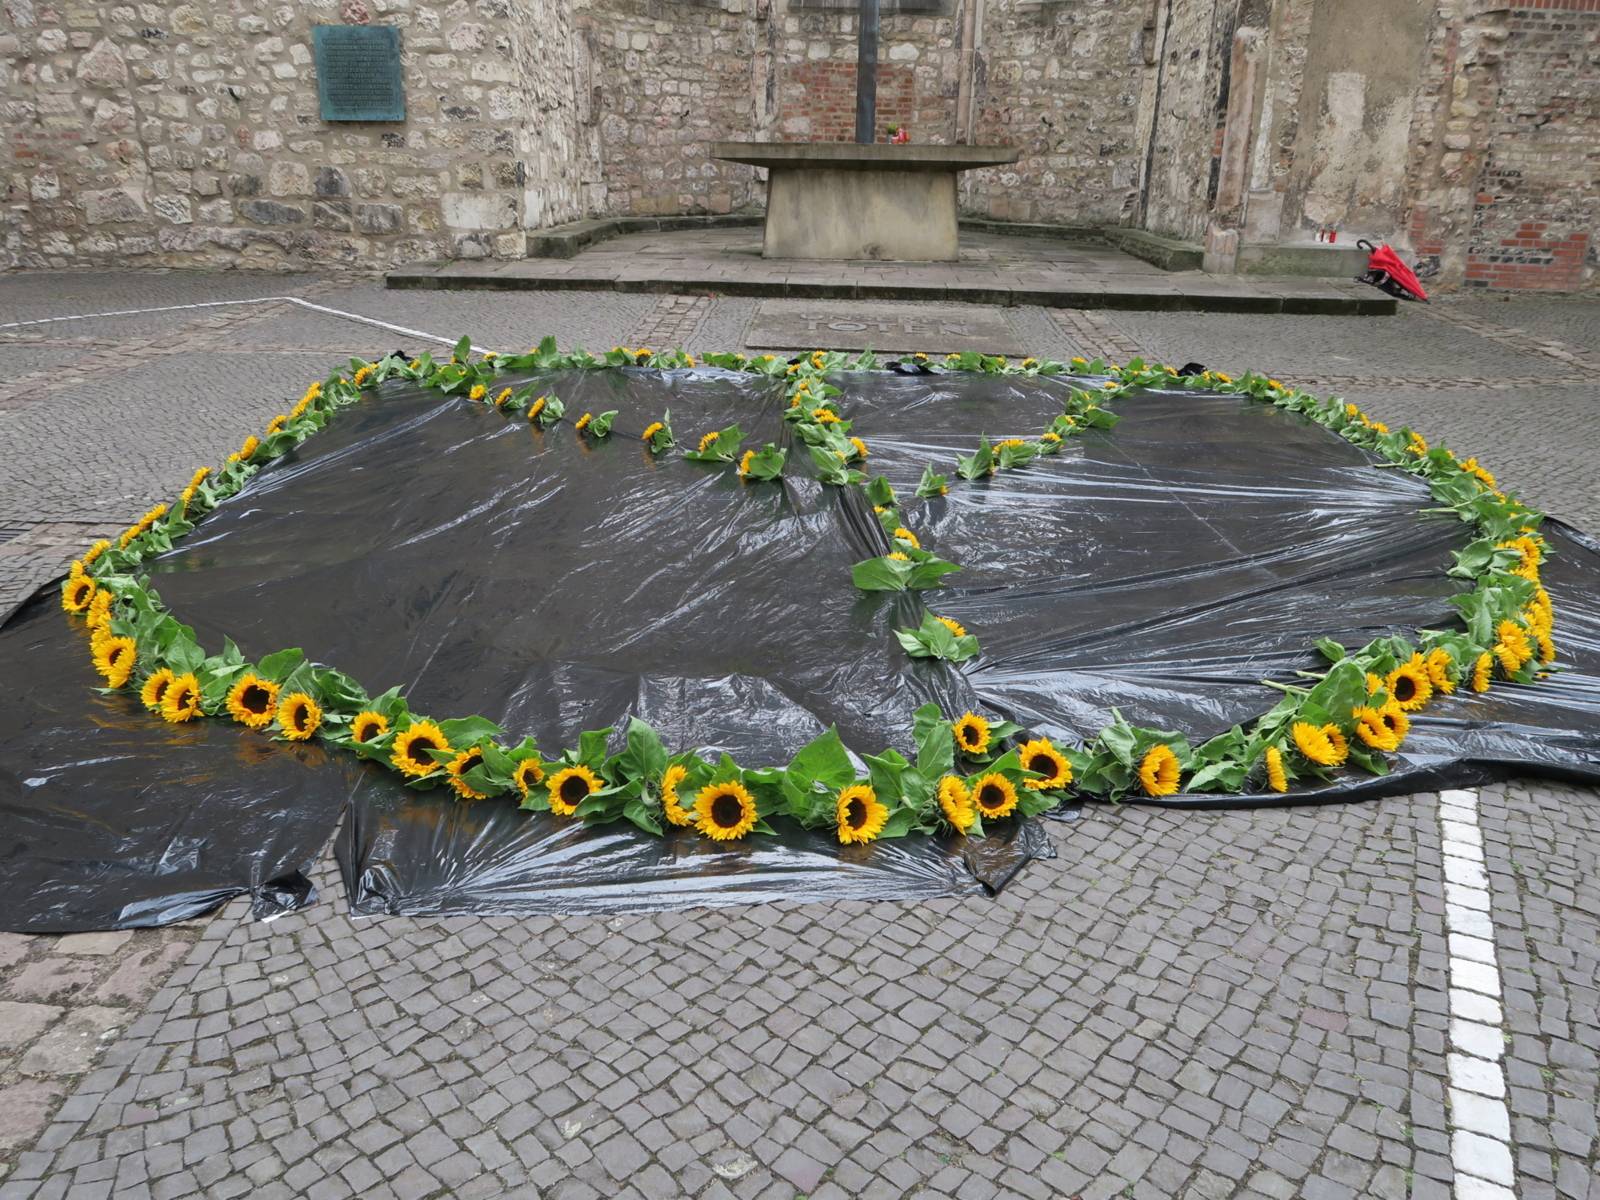 Friedenssymbol für nukleare Abrüstung: Sonnenblumen als "Peace"-Zeichen.